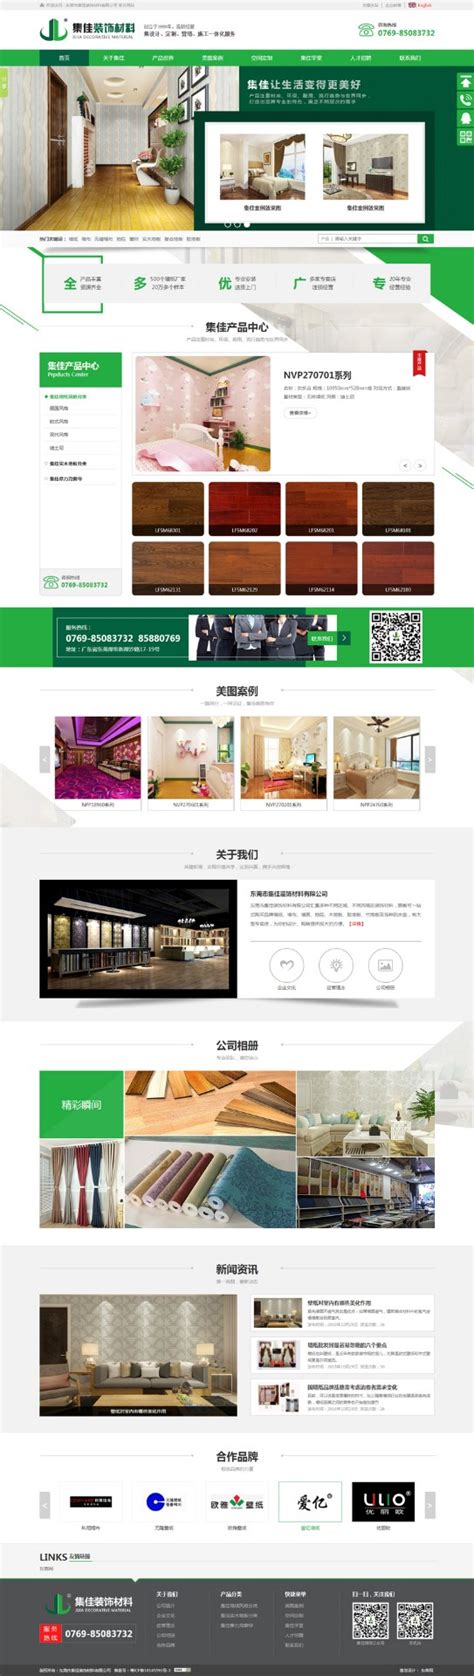 装潢材料公司网站设计模板PSD素材免费下载_红动中国